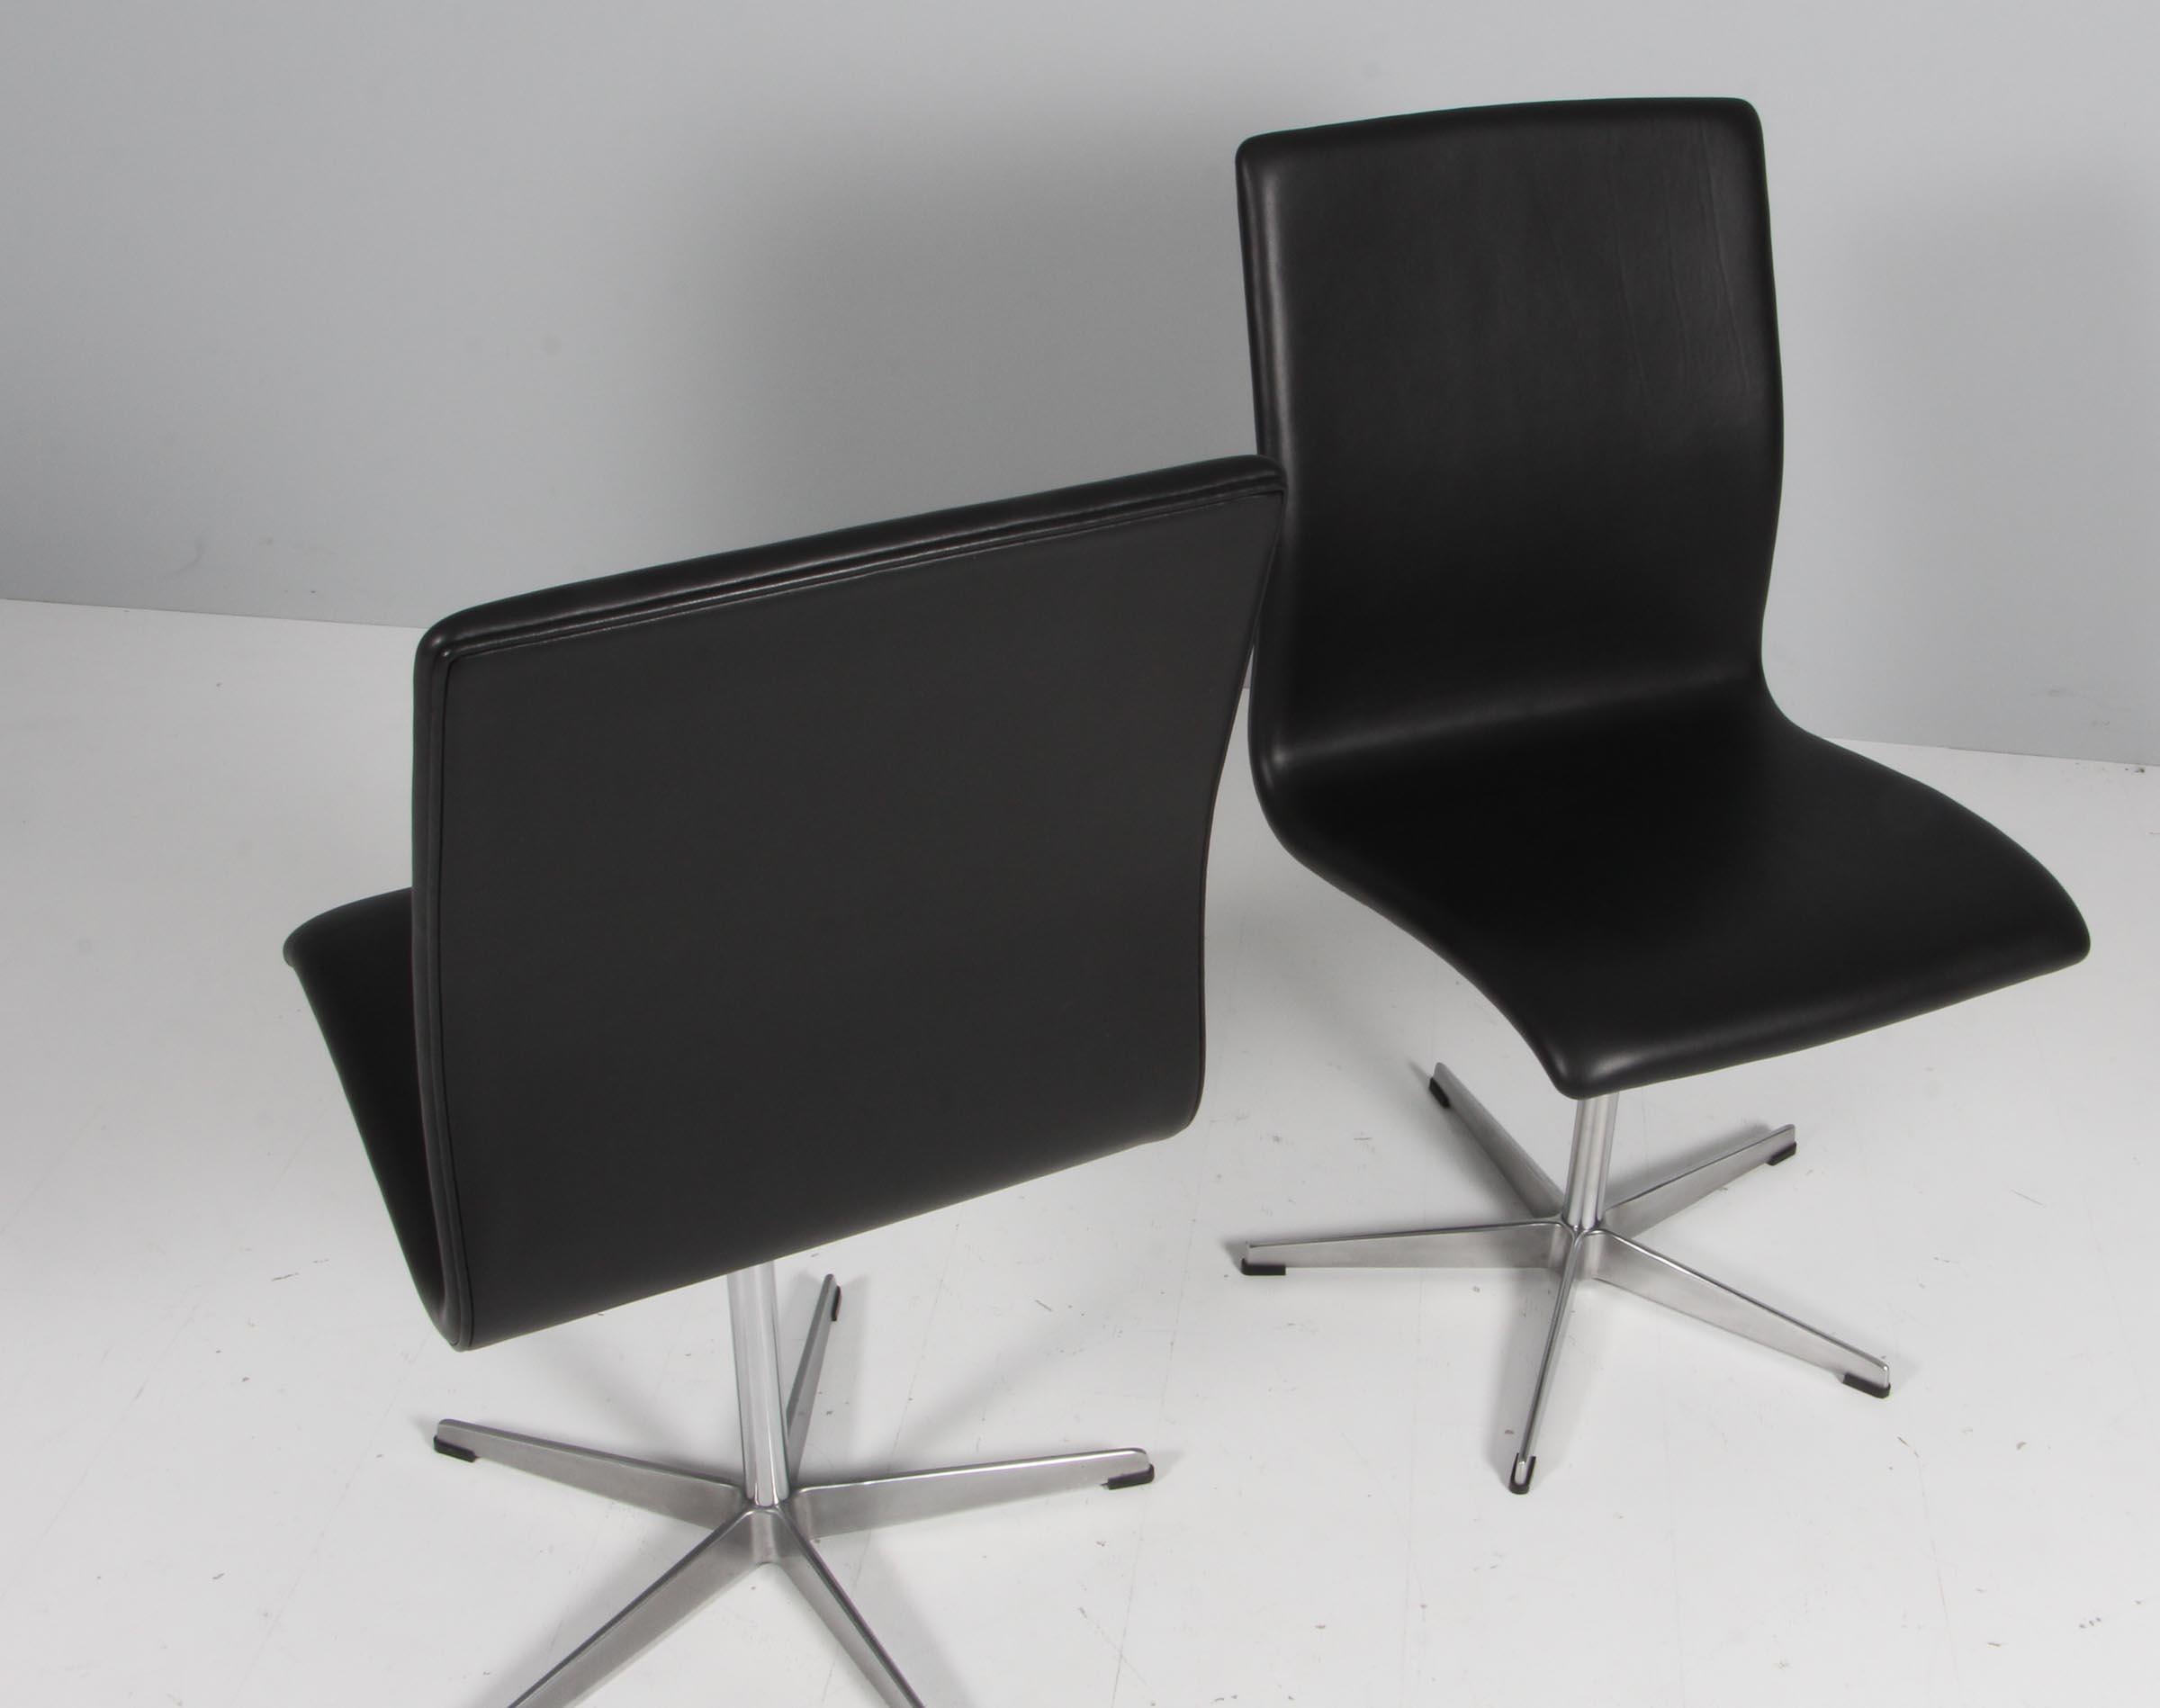 Arne Jacobsen Oxford chair five star base in aluminum.

Nouveau revêtement en cuir pur aniline noir

Fabriqué par Fritz Hansen.

Original conçu pour l'université d'Oxford.